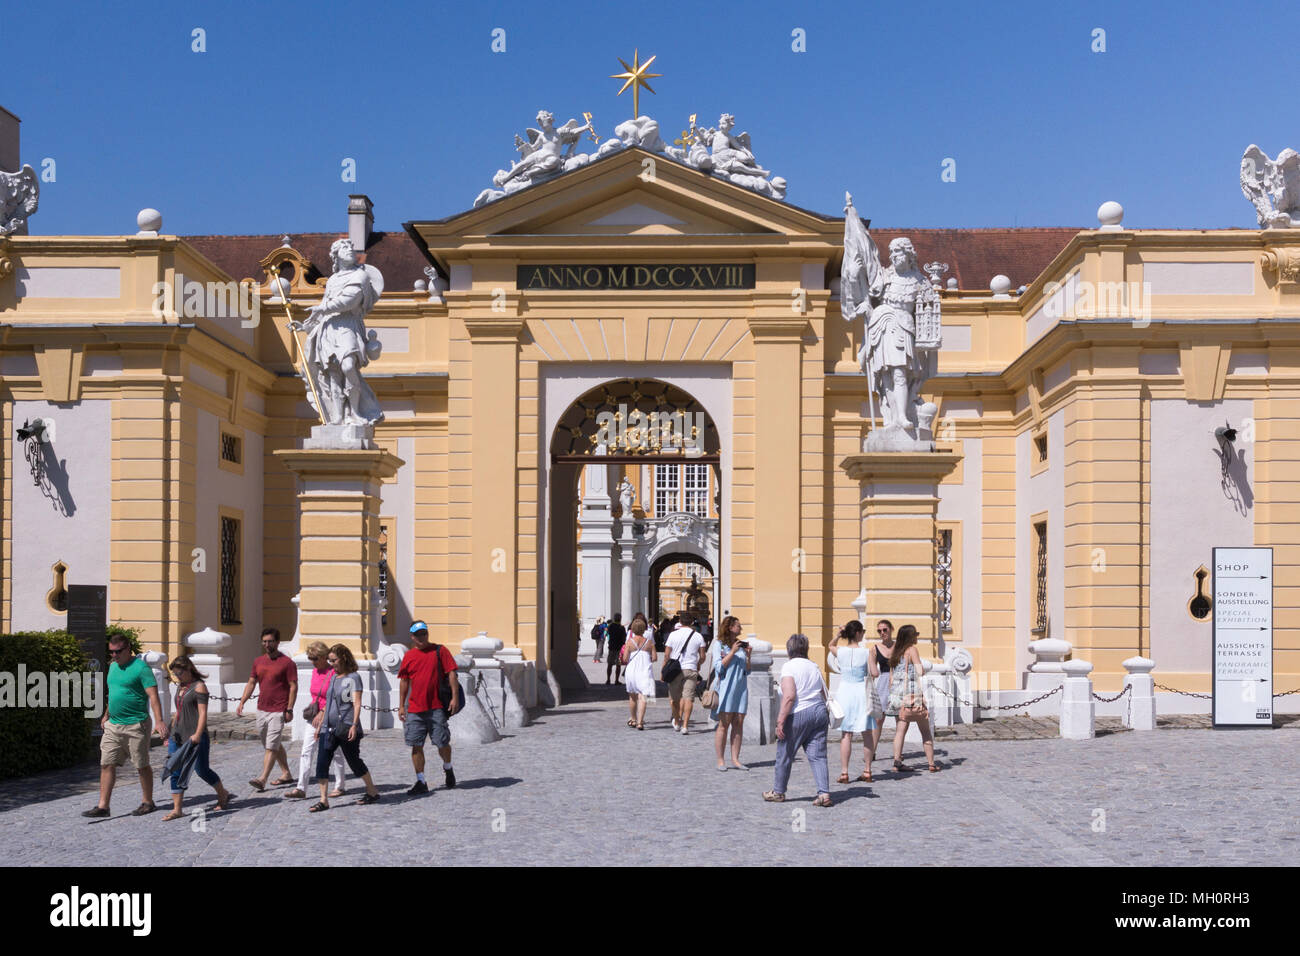 Les visiteurs de l'Abbaye de Melk en Autriche en passant par la porte principale. Son architecture est célèbre dans le monde entier et une partie du patrimoine culturel mondial de l'UNESCO Banque D'Images